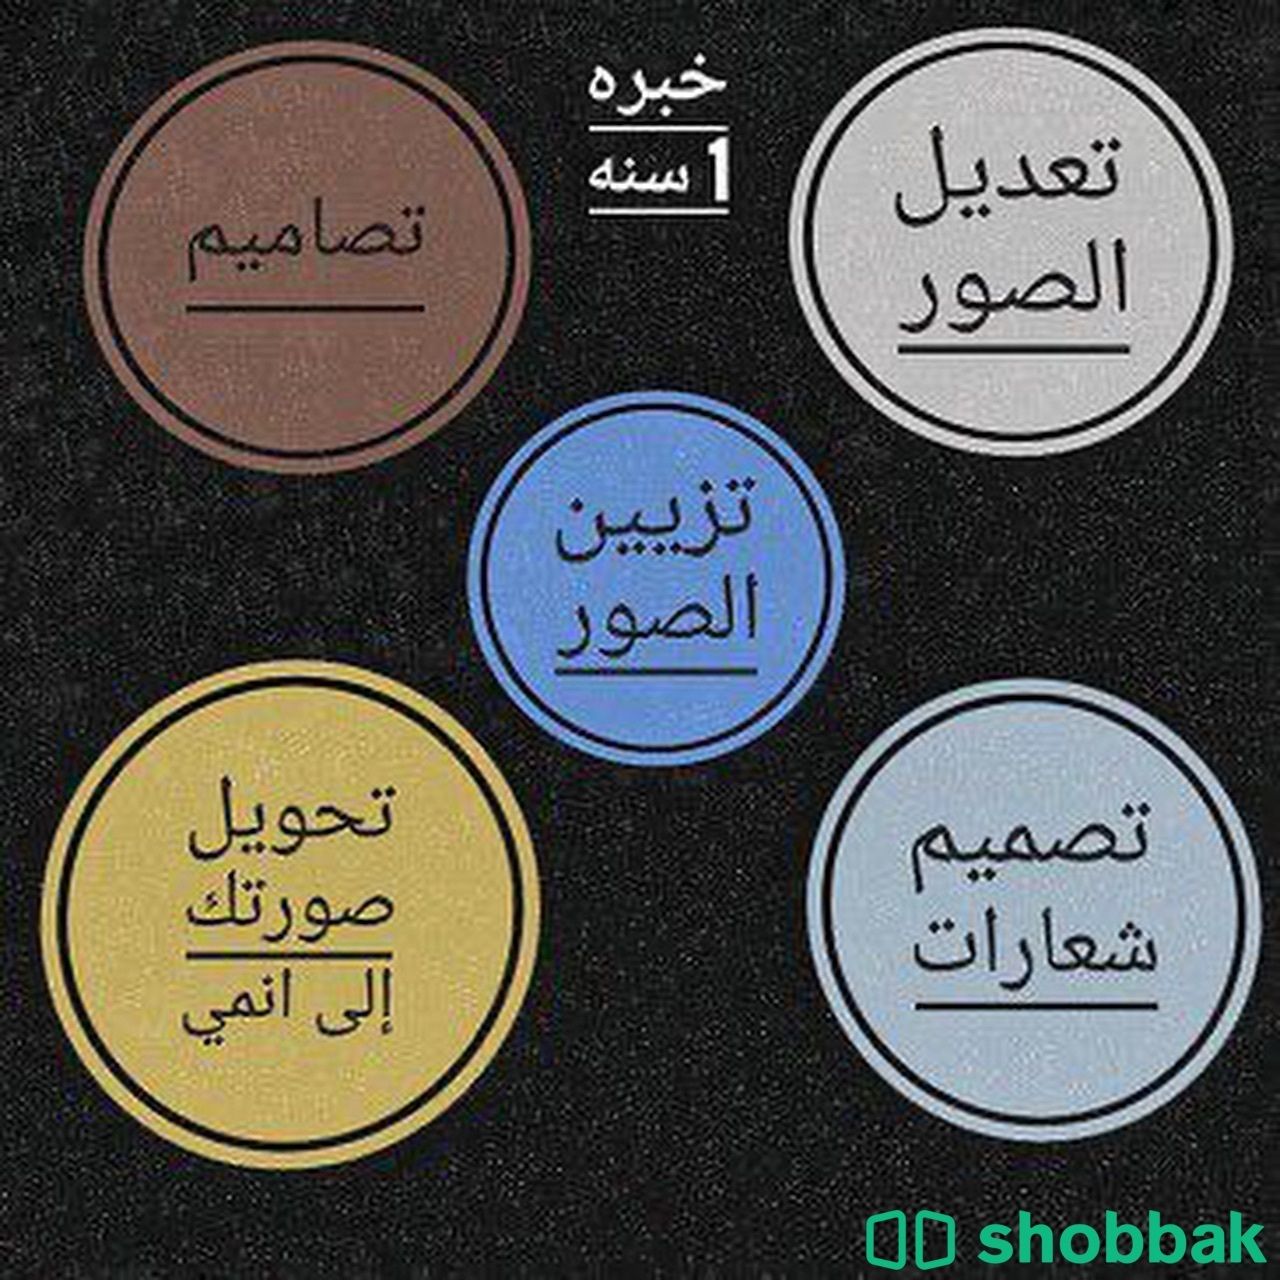 مصمم فوتوشوب محترف Shobbak Saudi Arabia